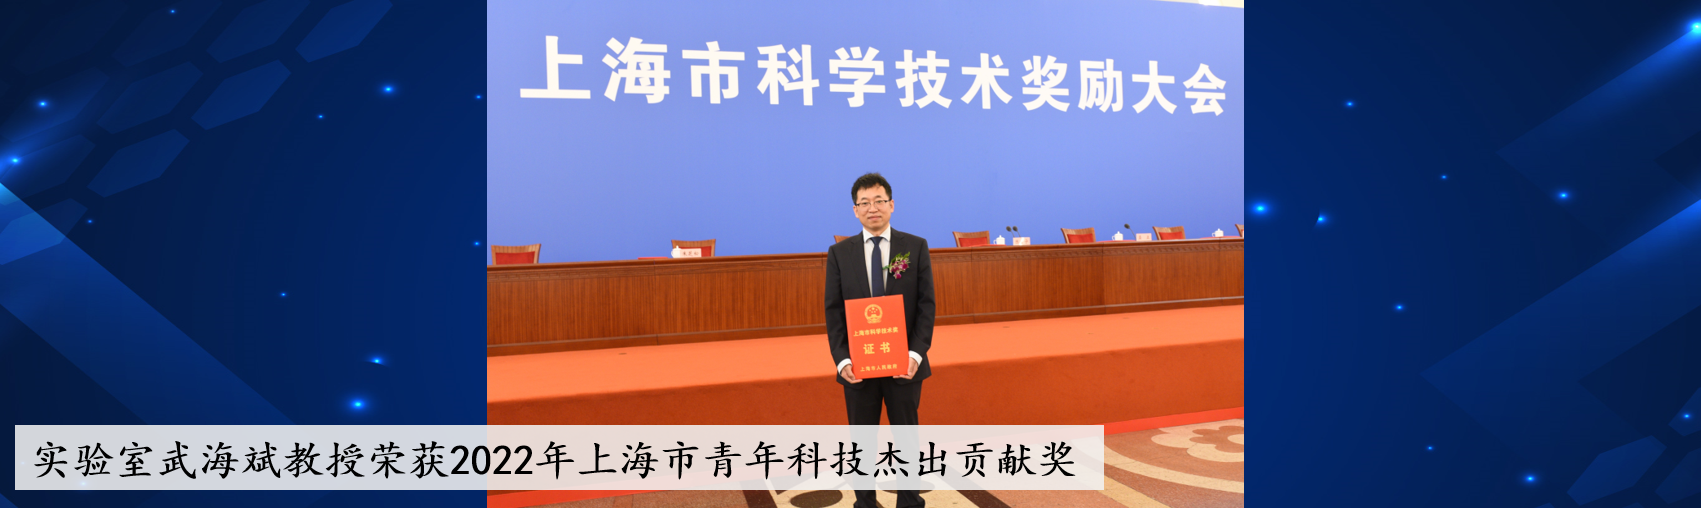 祝贺！实验室武海斌教授荣获2022年上海市青年科技杰出贡献奖